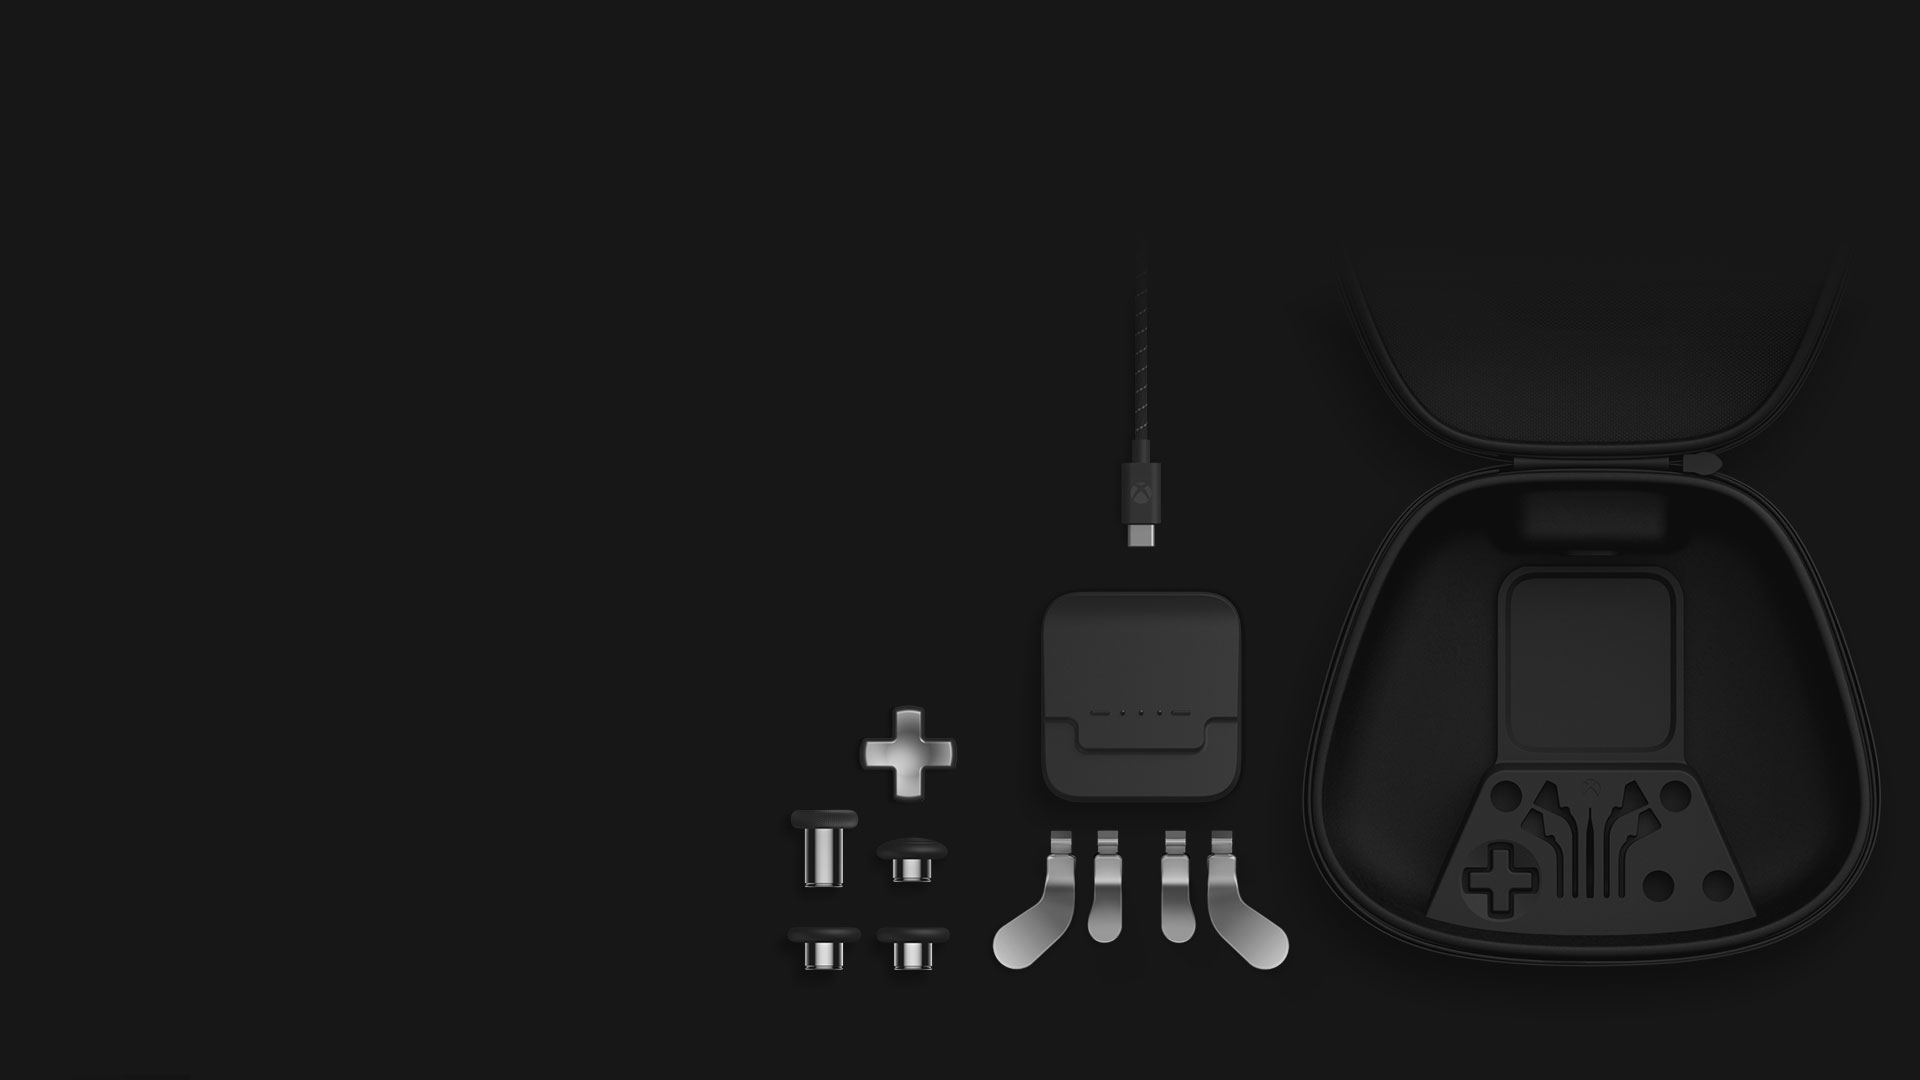 Isometrische Ansicht des Inhalts des Complete Component Pack: Ministicks, Steuerkreuz, Paddles, Ladestation, USB-C-Kabel und Transporttasche.